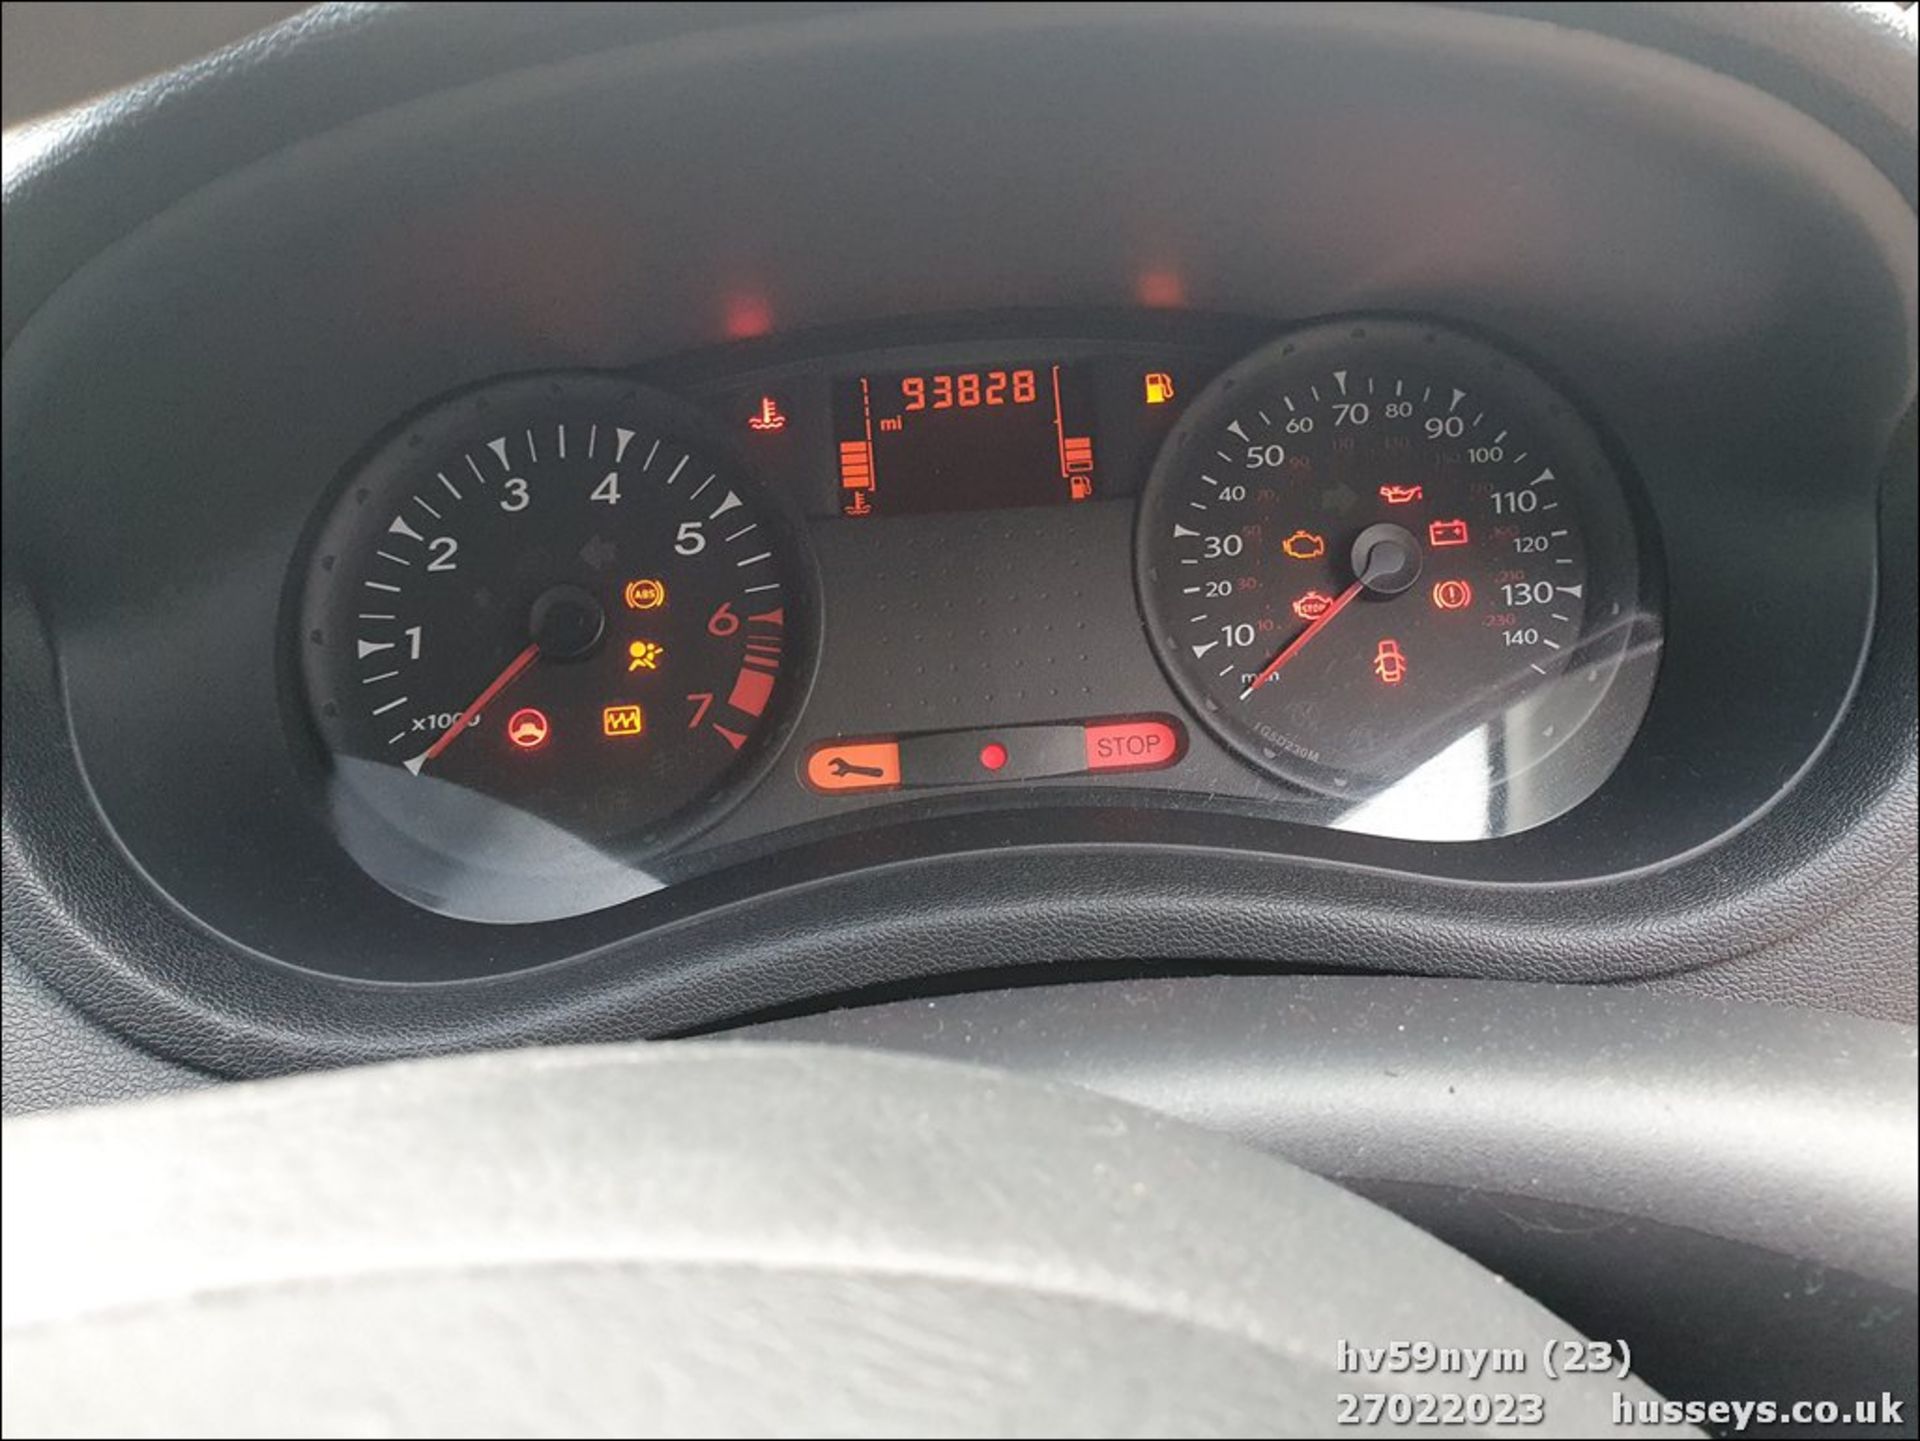 09/59 RENAULT CLIO EXTREME - 1149cc 3dr Hatchback (Black, 93k) - Image 23 of 45